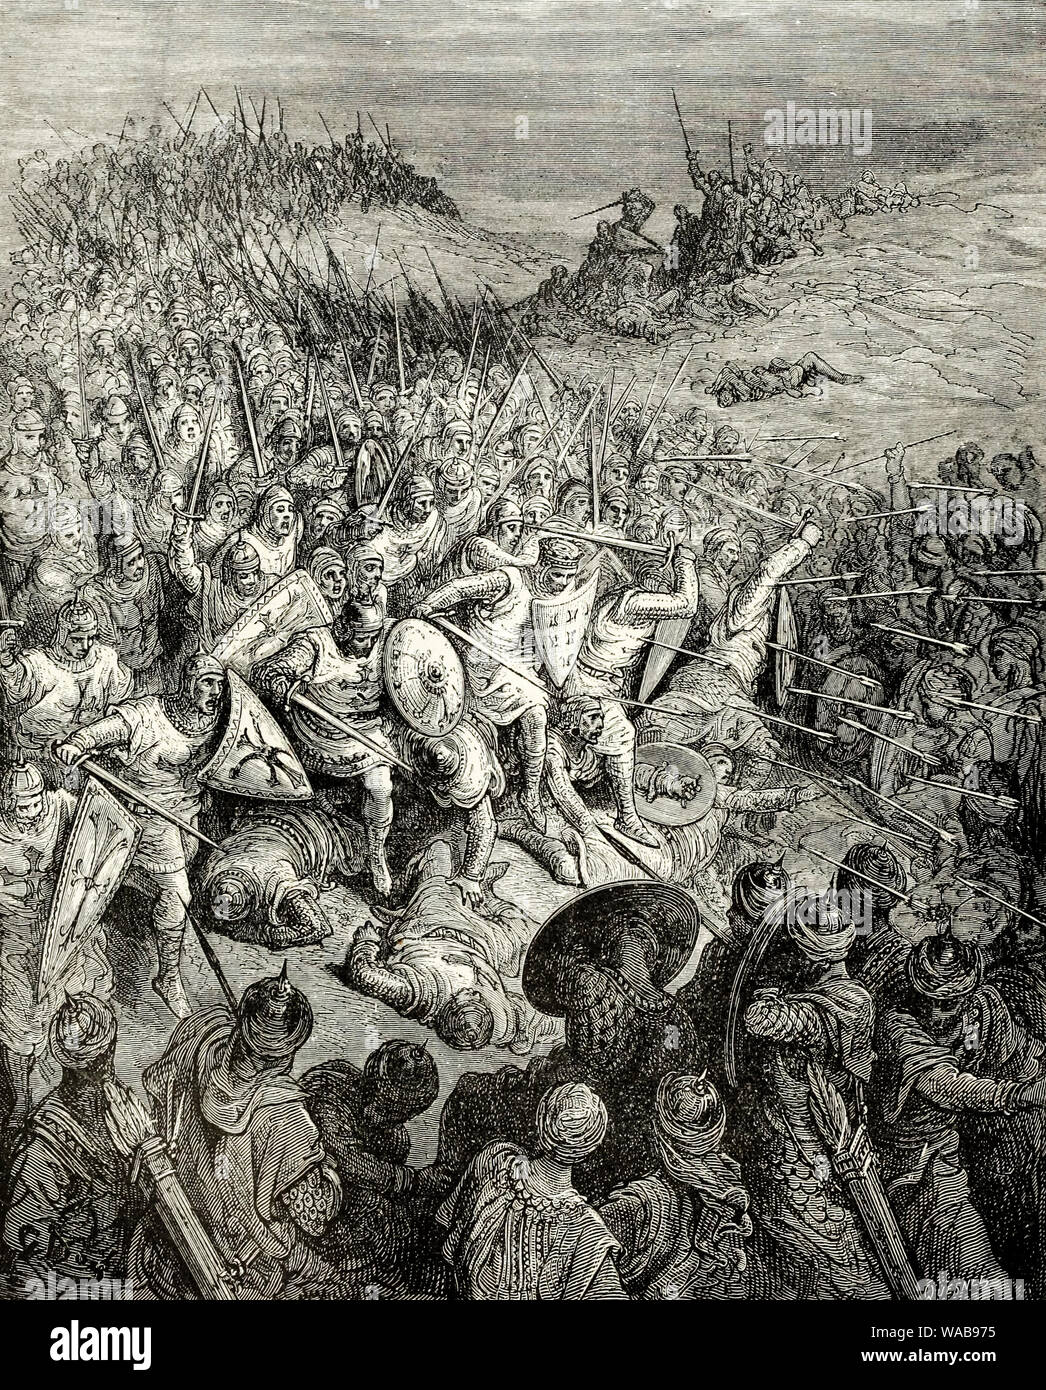 Les croisades, la bataille d'Arsuf, 1191, gravure de Gustav doré, avant 1883 Banque D'Images